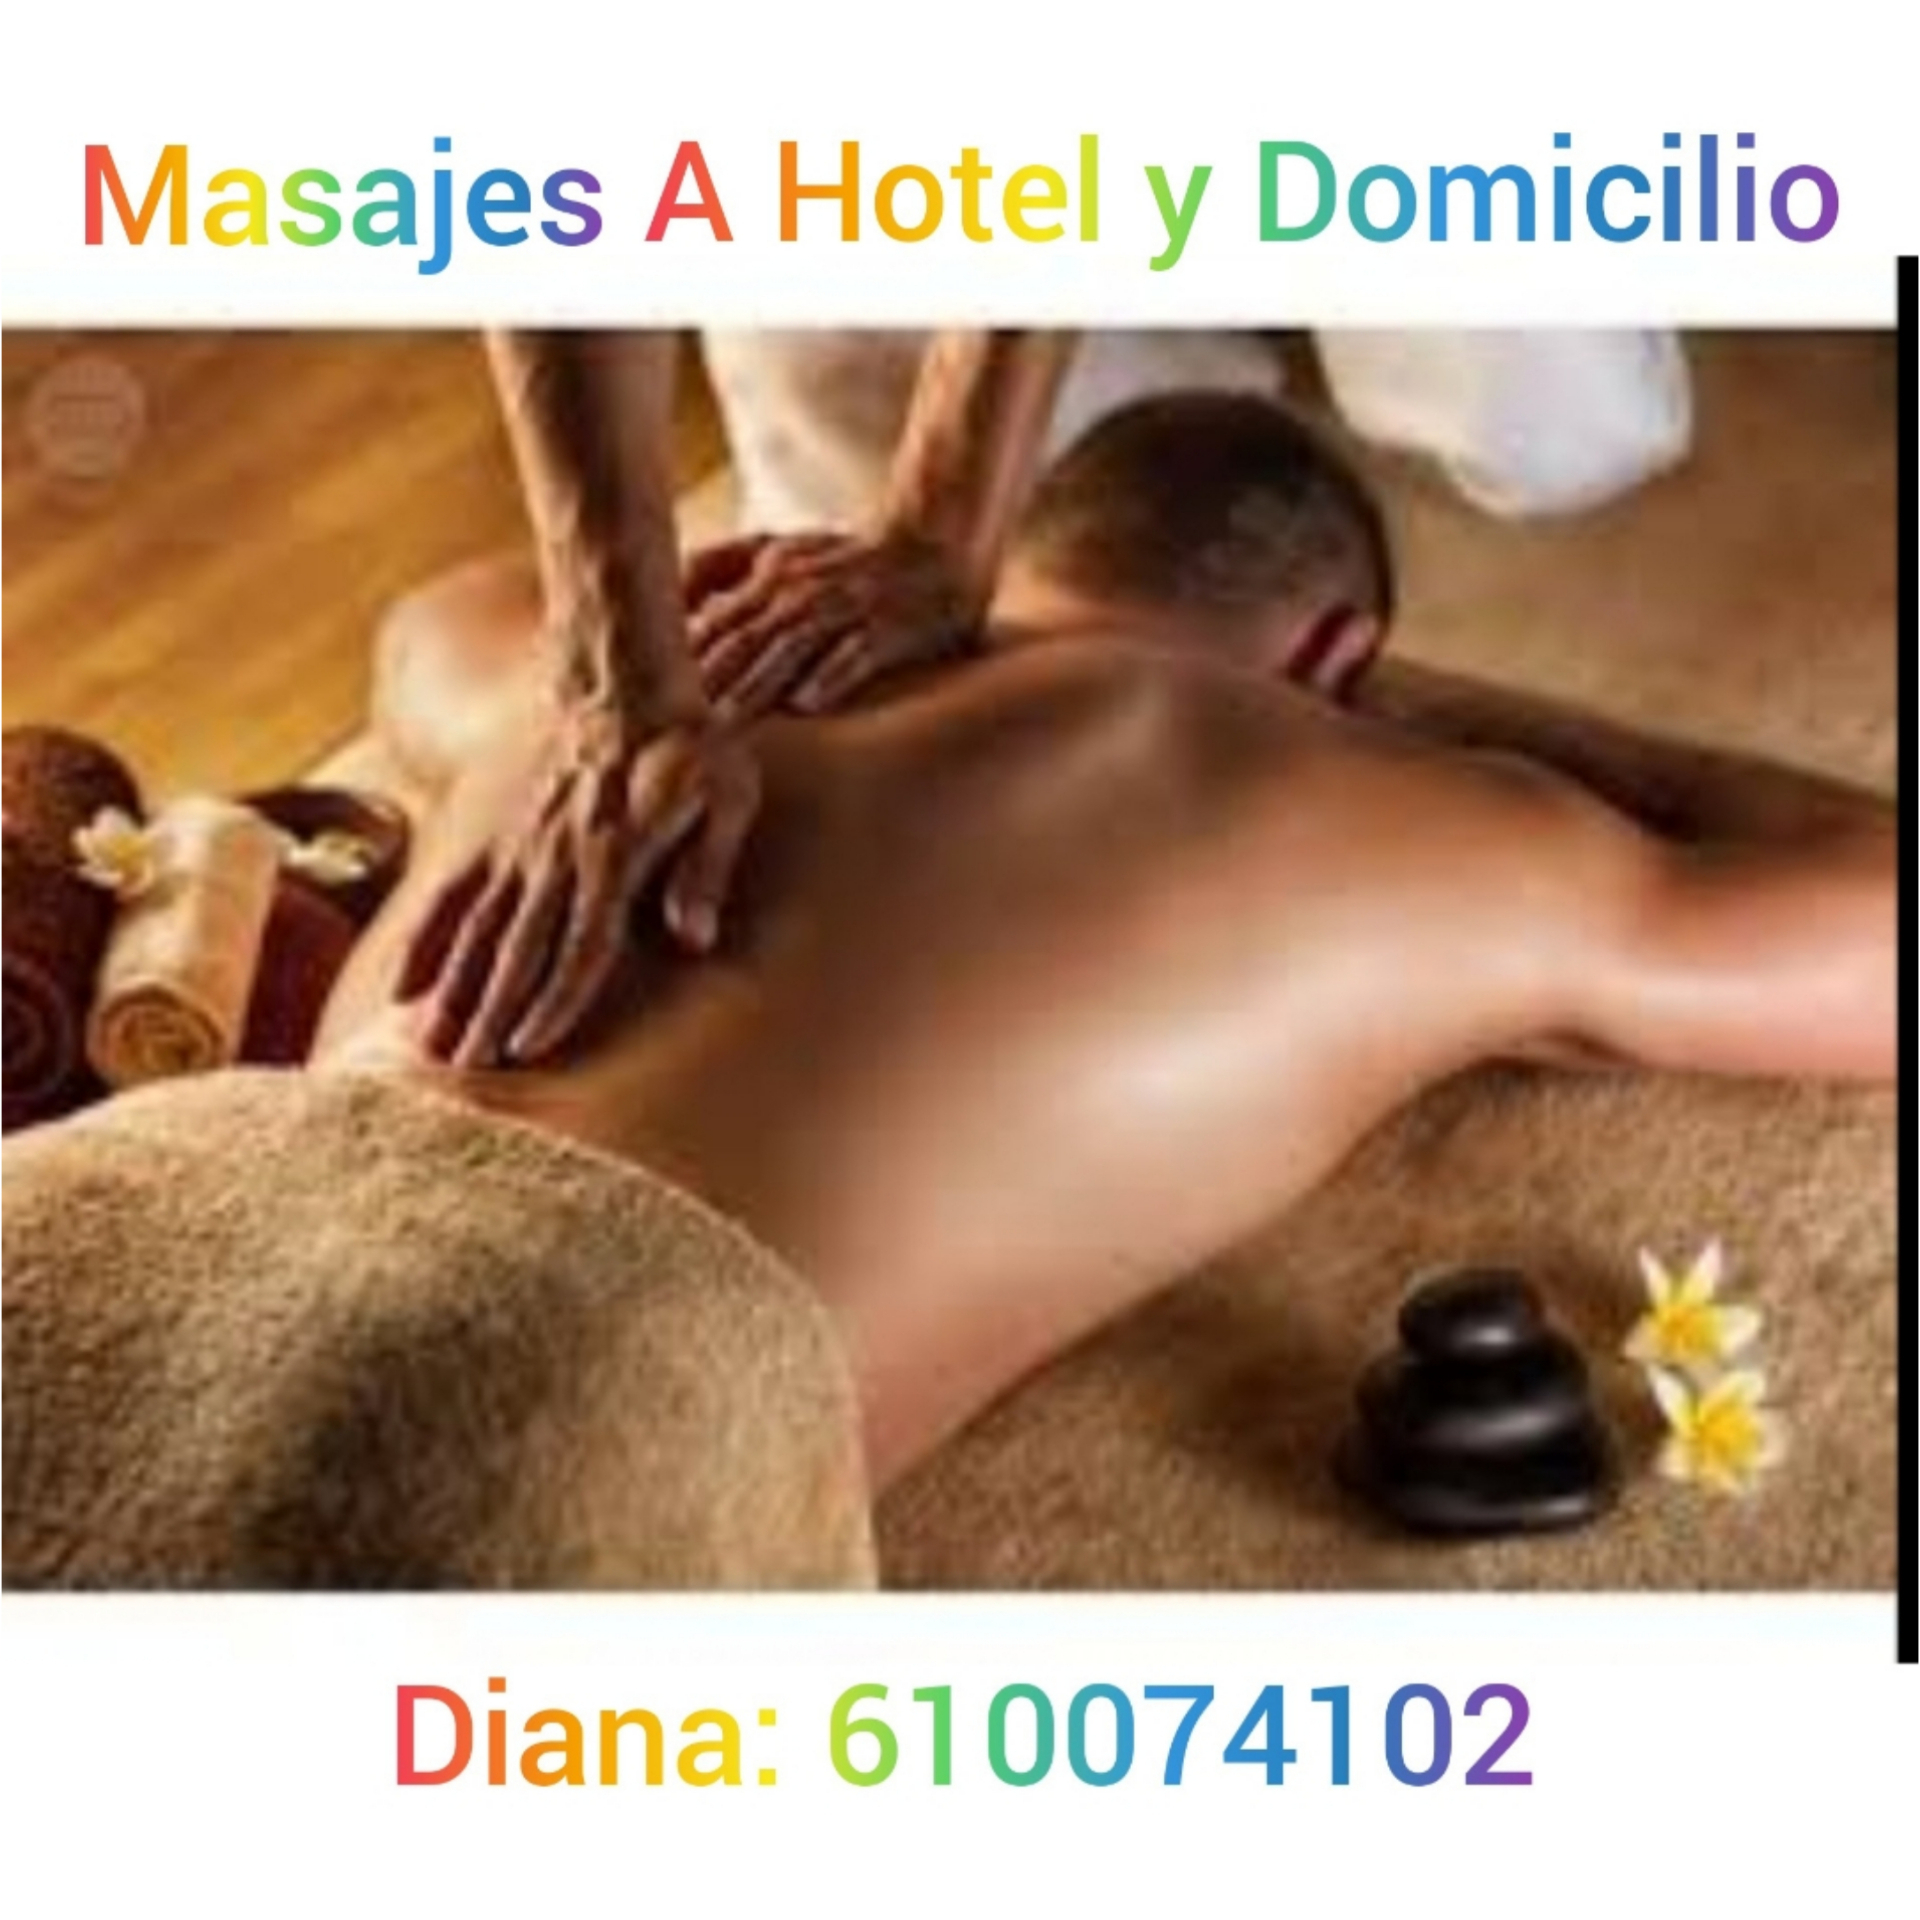 masajistas-terapeuticos madrid MASAJES Domicilio hotel 